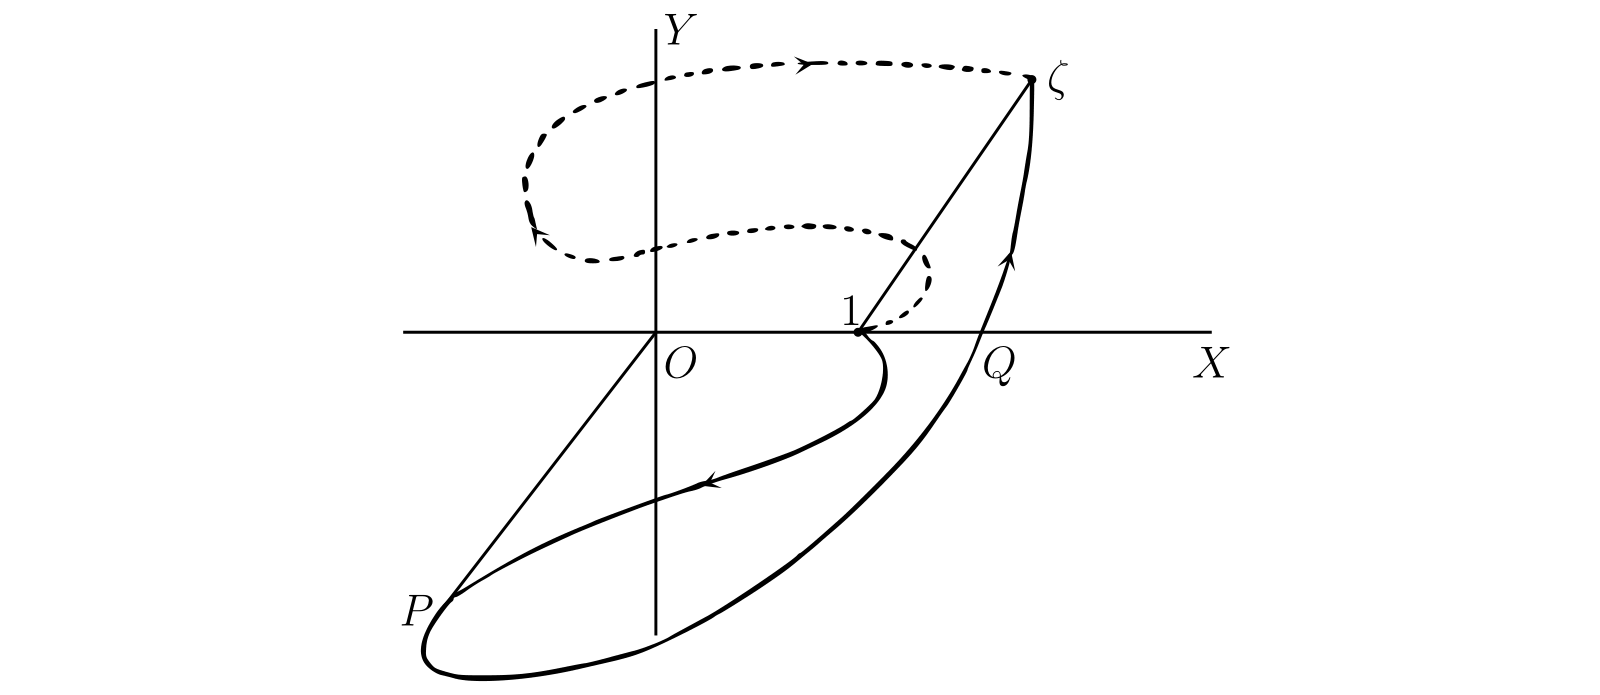 対数関数と積分路の関係